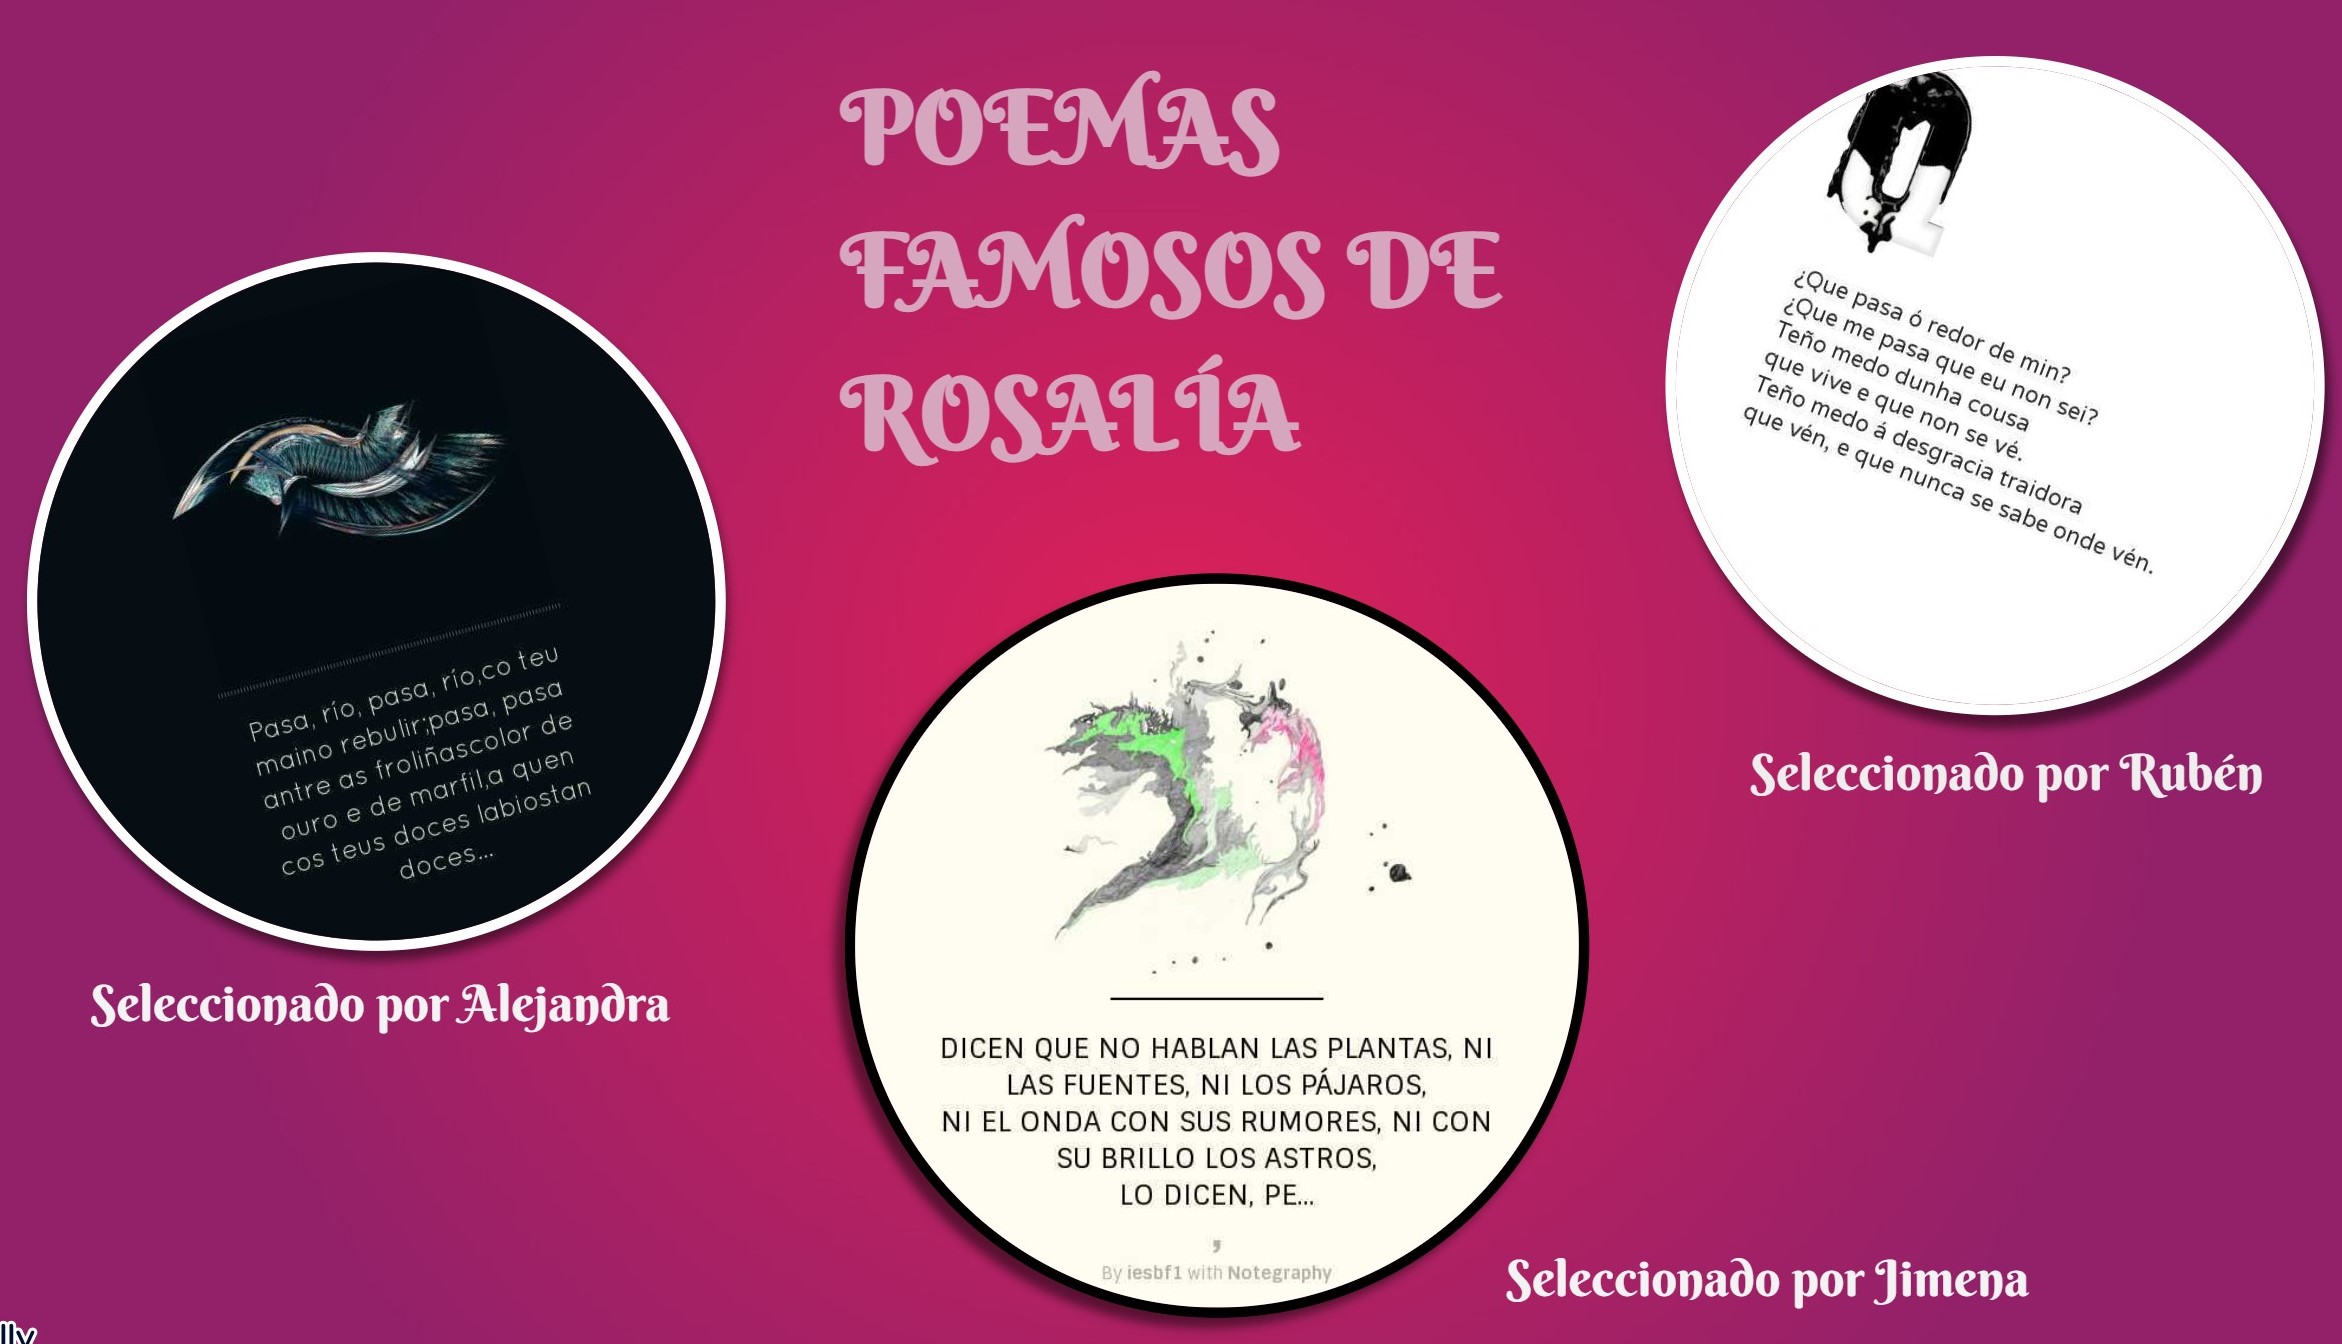 genially poemas Rosalía.jpg